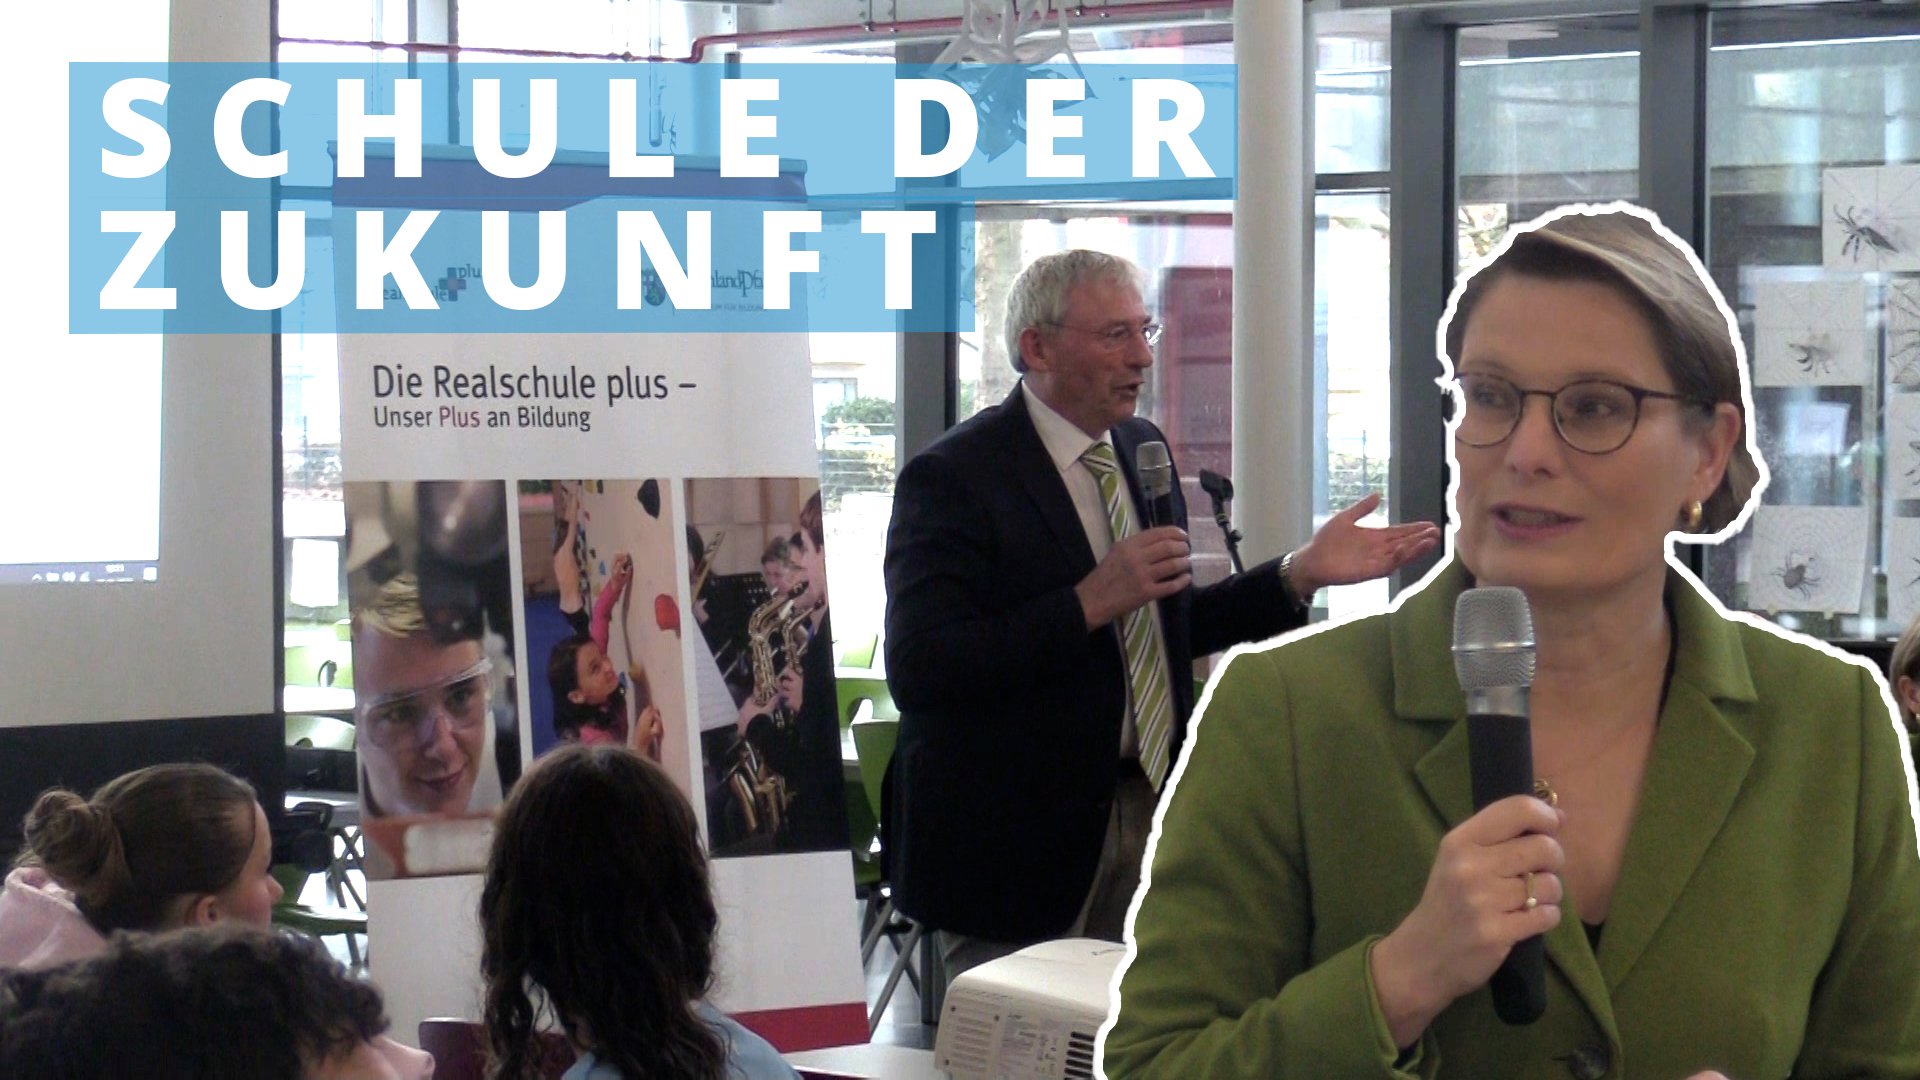 Schule der Zukunft: Bildungsministerin Stefanie Hubig besuchte die Realschule plus in Lahnstein